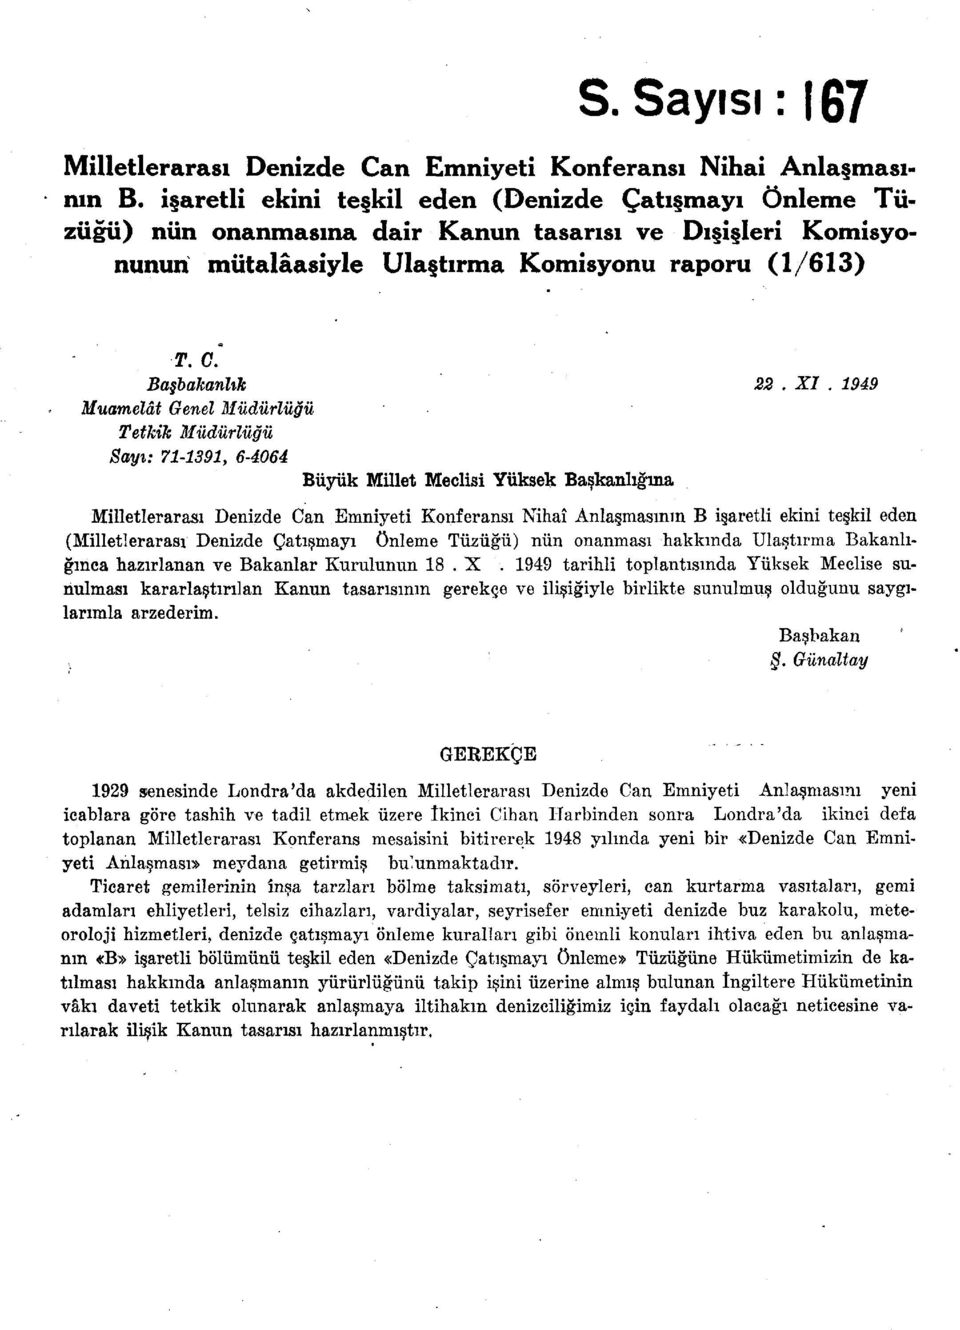 1949 Muamelât Genel Müdürlüğü Tetkik Müdürlüğü Sayı: 71-1391, 6-4064 Büyük Millet Meclisi Yüksek Başkanlığına Milletlerarası Denizde Can Emniyeti Konferansı Nihaî Anlaşmasının B işaretli ekini teşkil